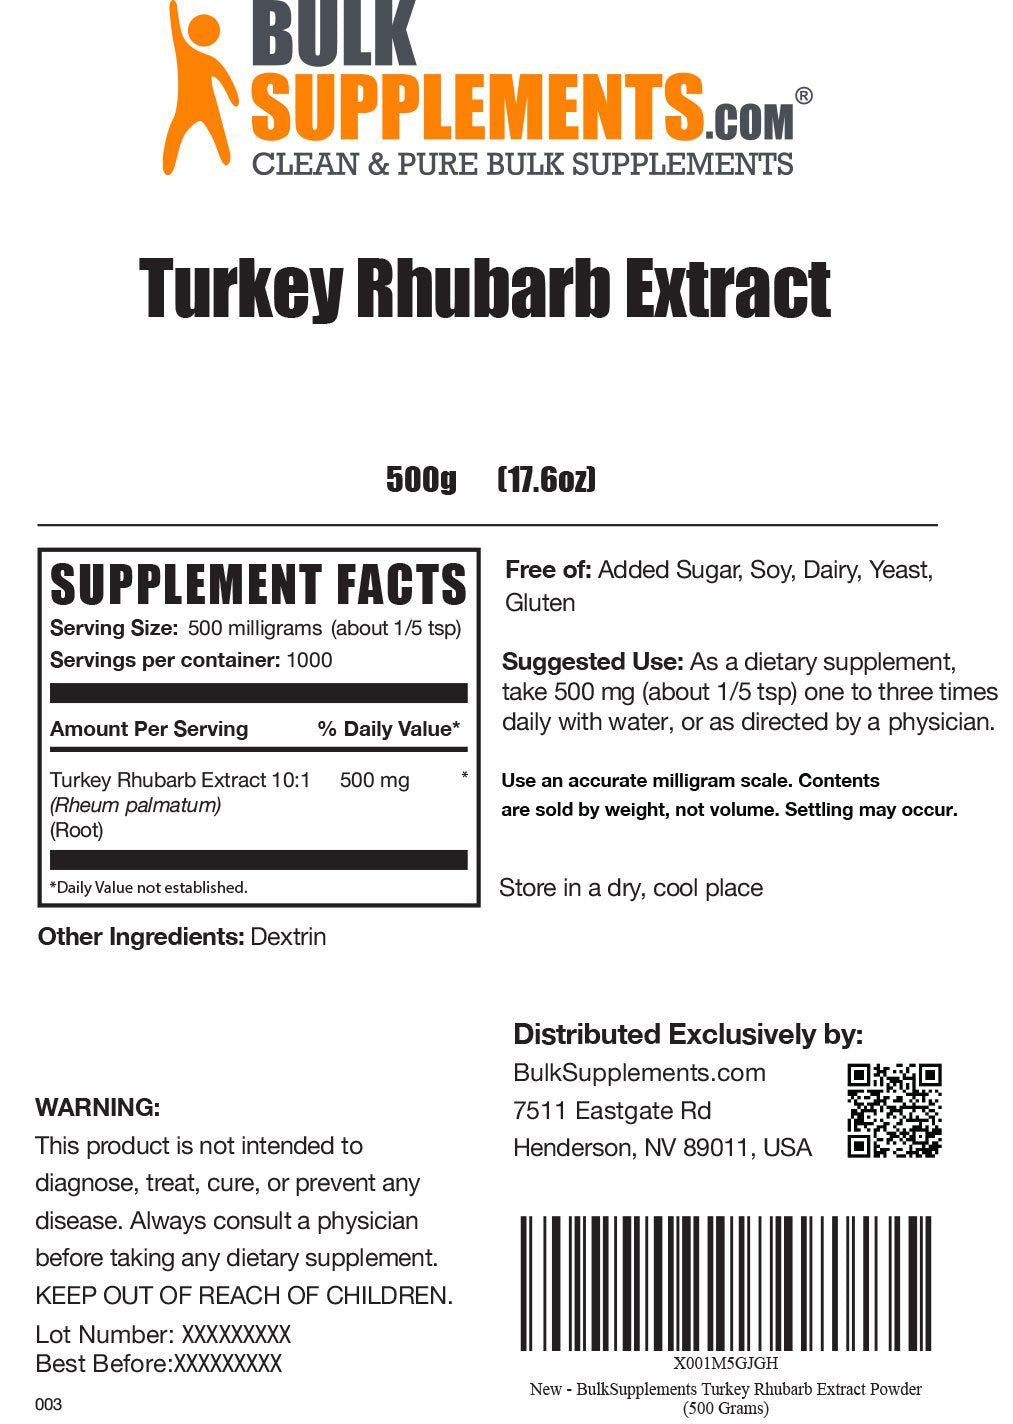 Turkey Rhubarb Extract powder label 500g